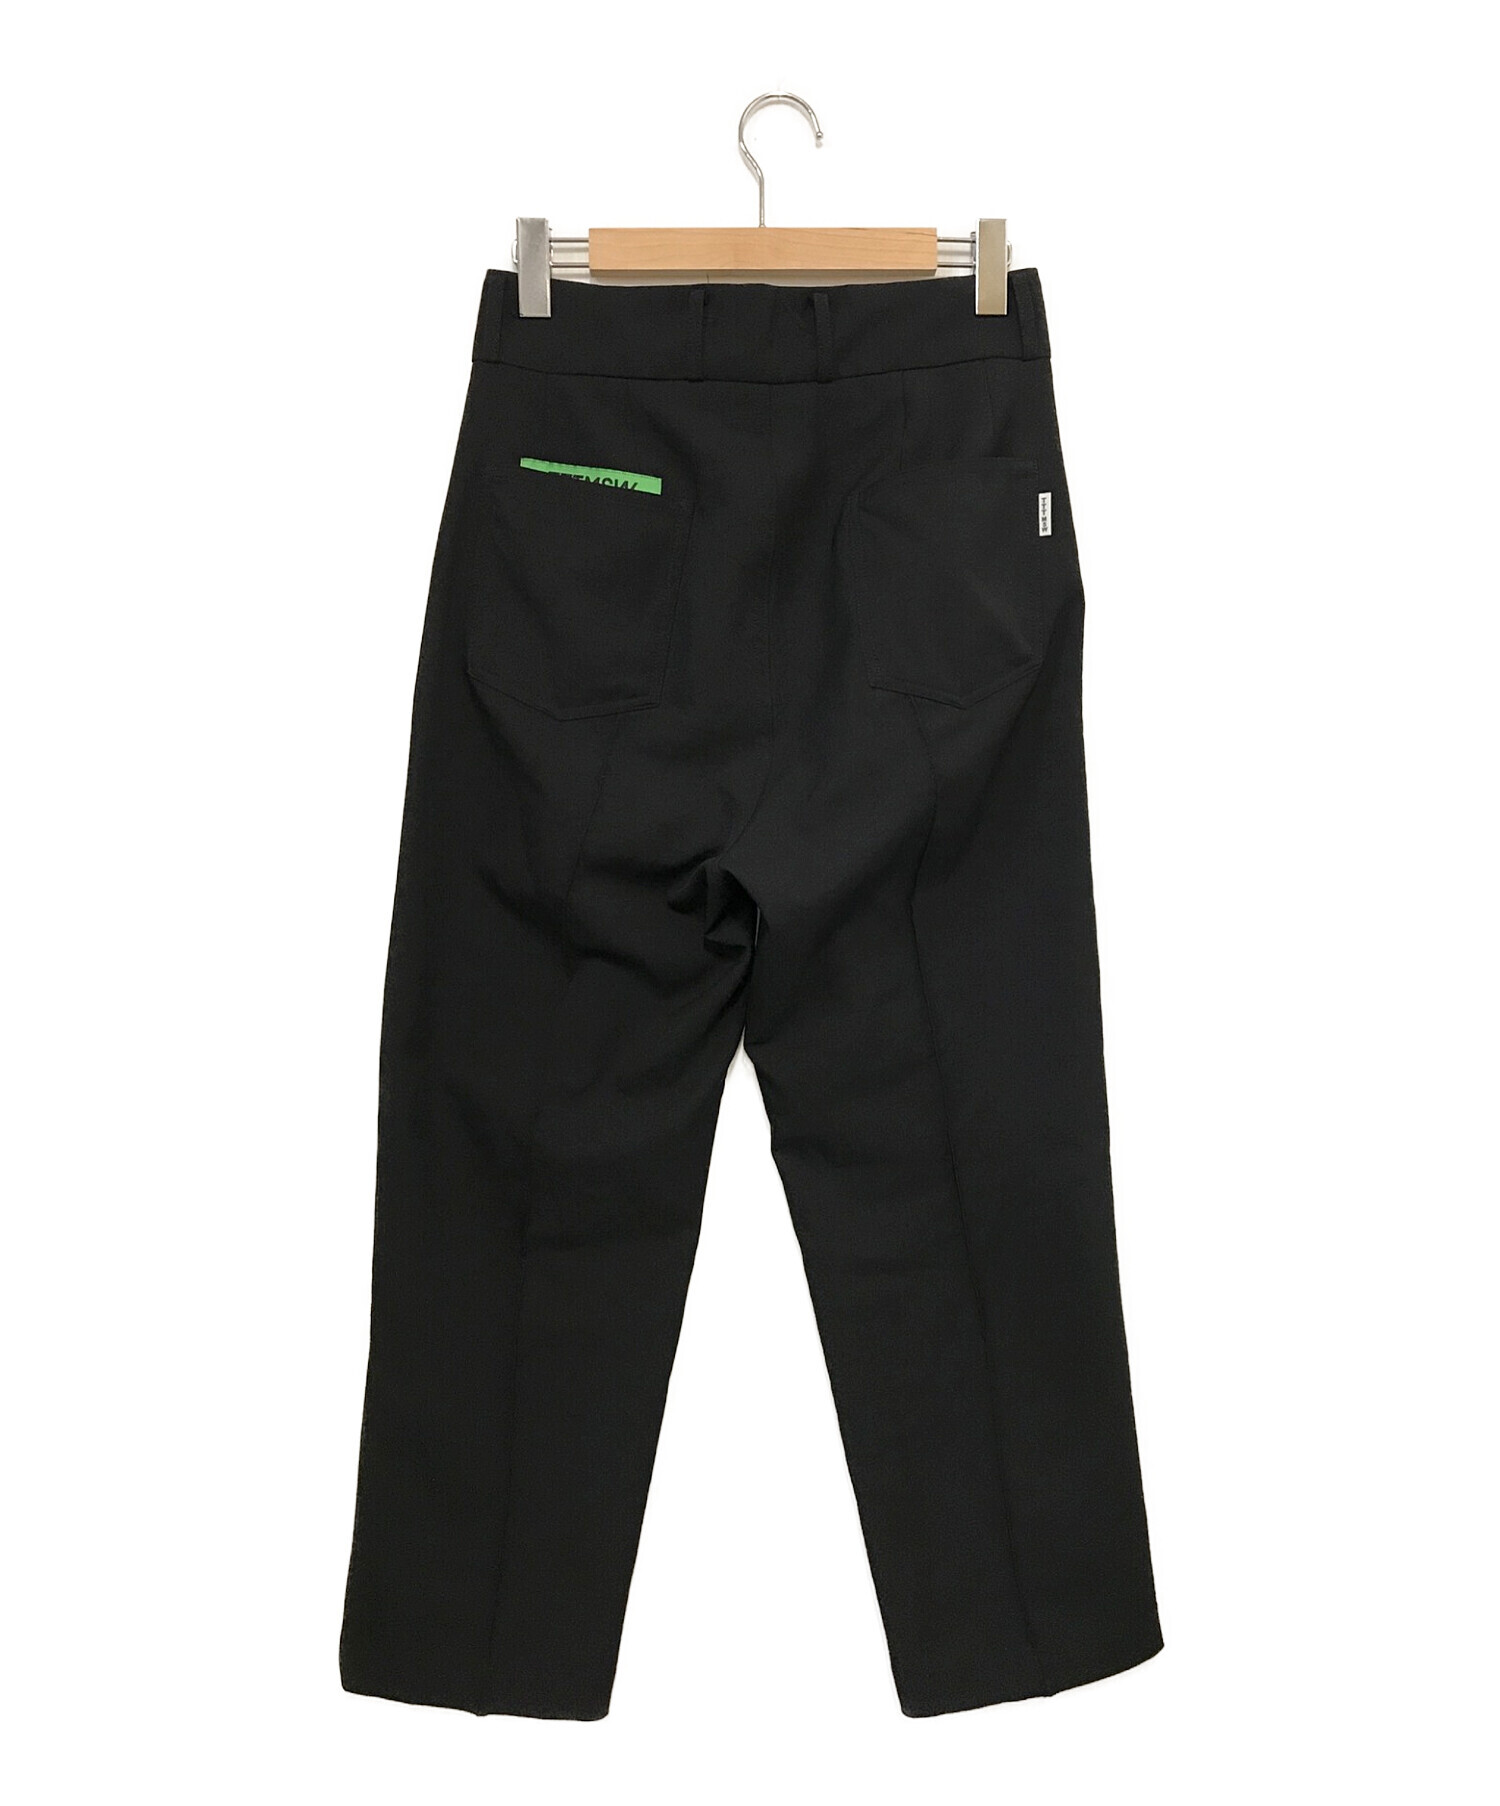 TTT MSW (ティーモダンストリートウェア) New Standard Pants ブラック サイズ:M